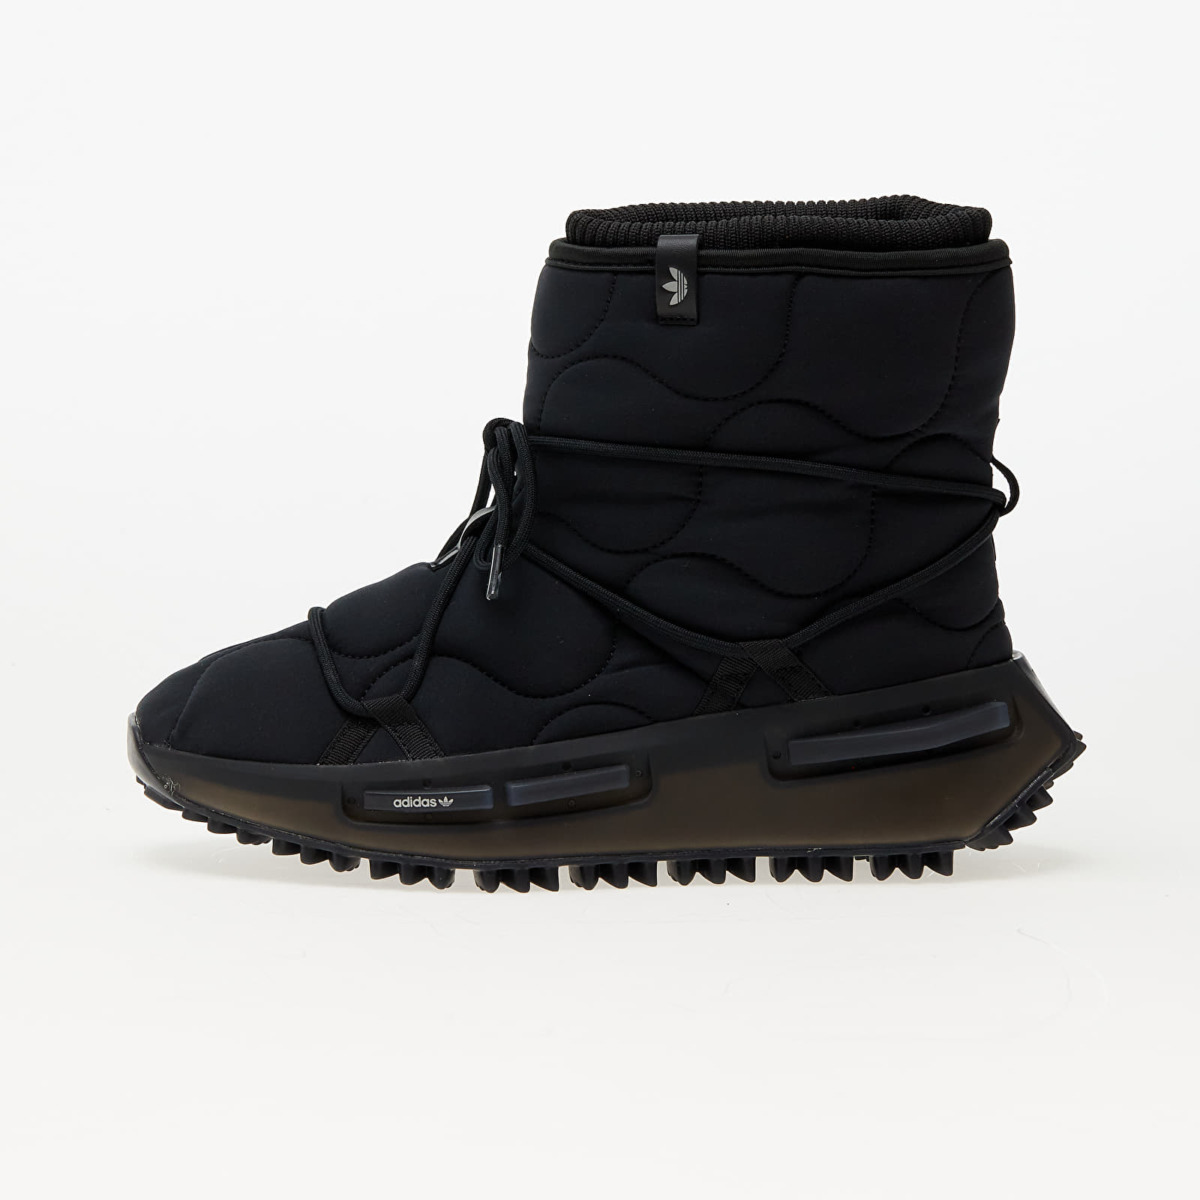 Adidas - Womens Boots Grey at Footshop GOOFASH